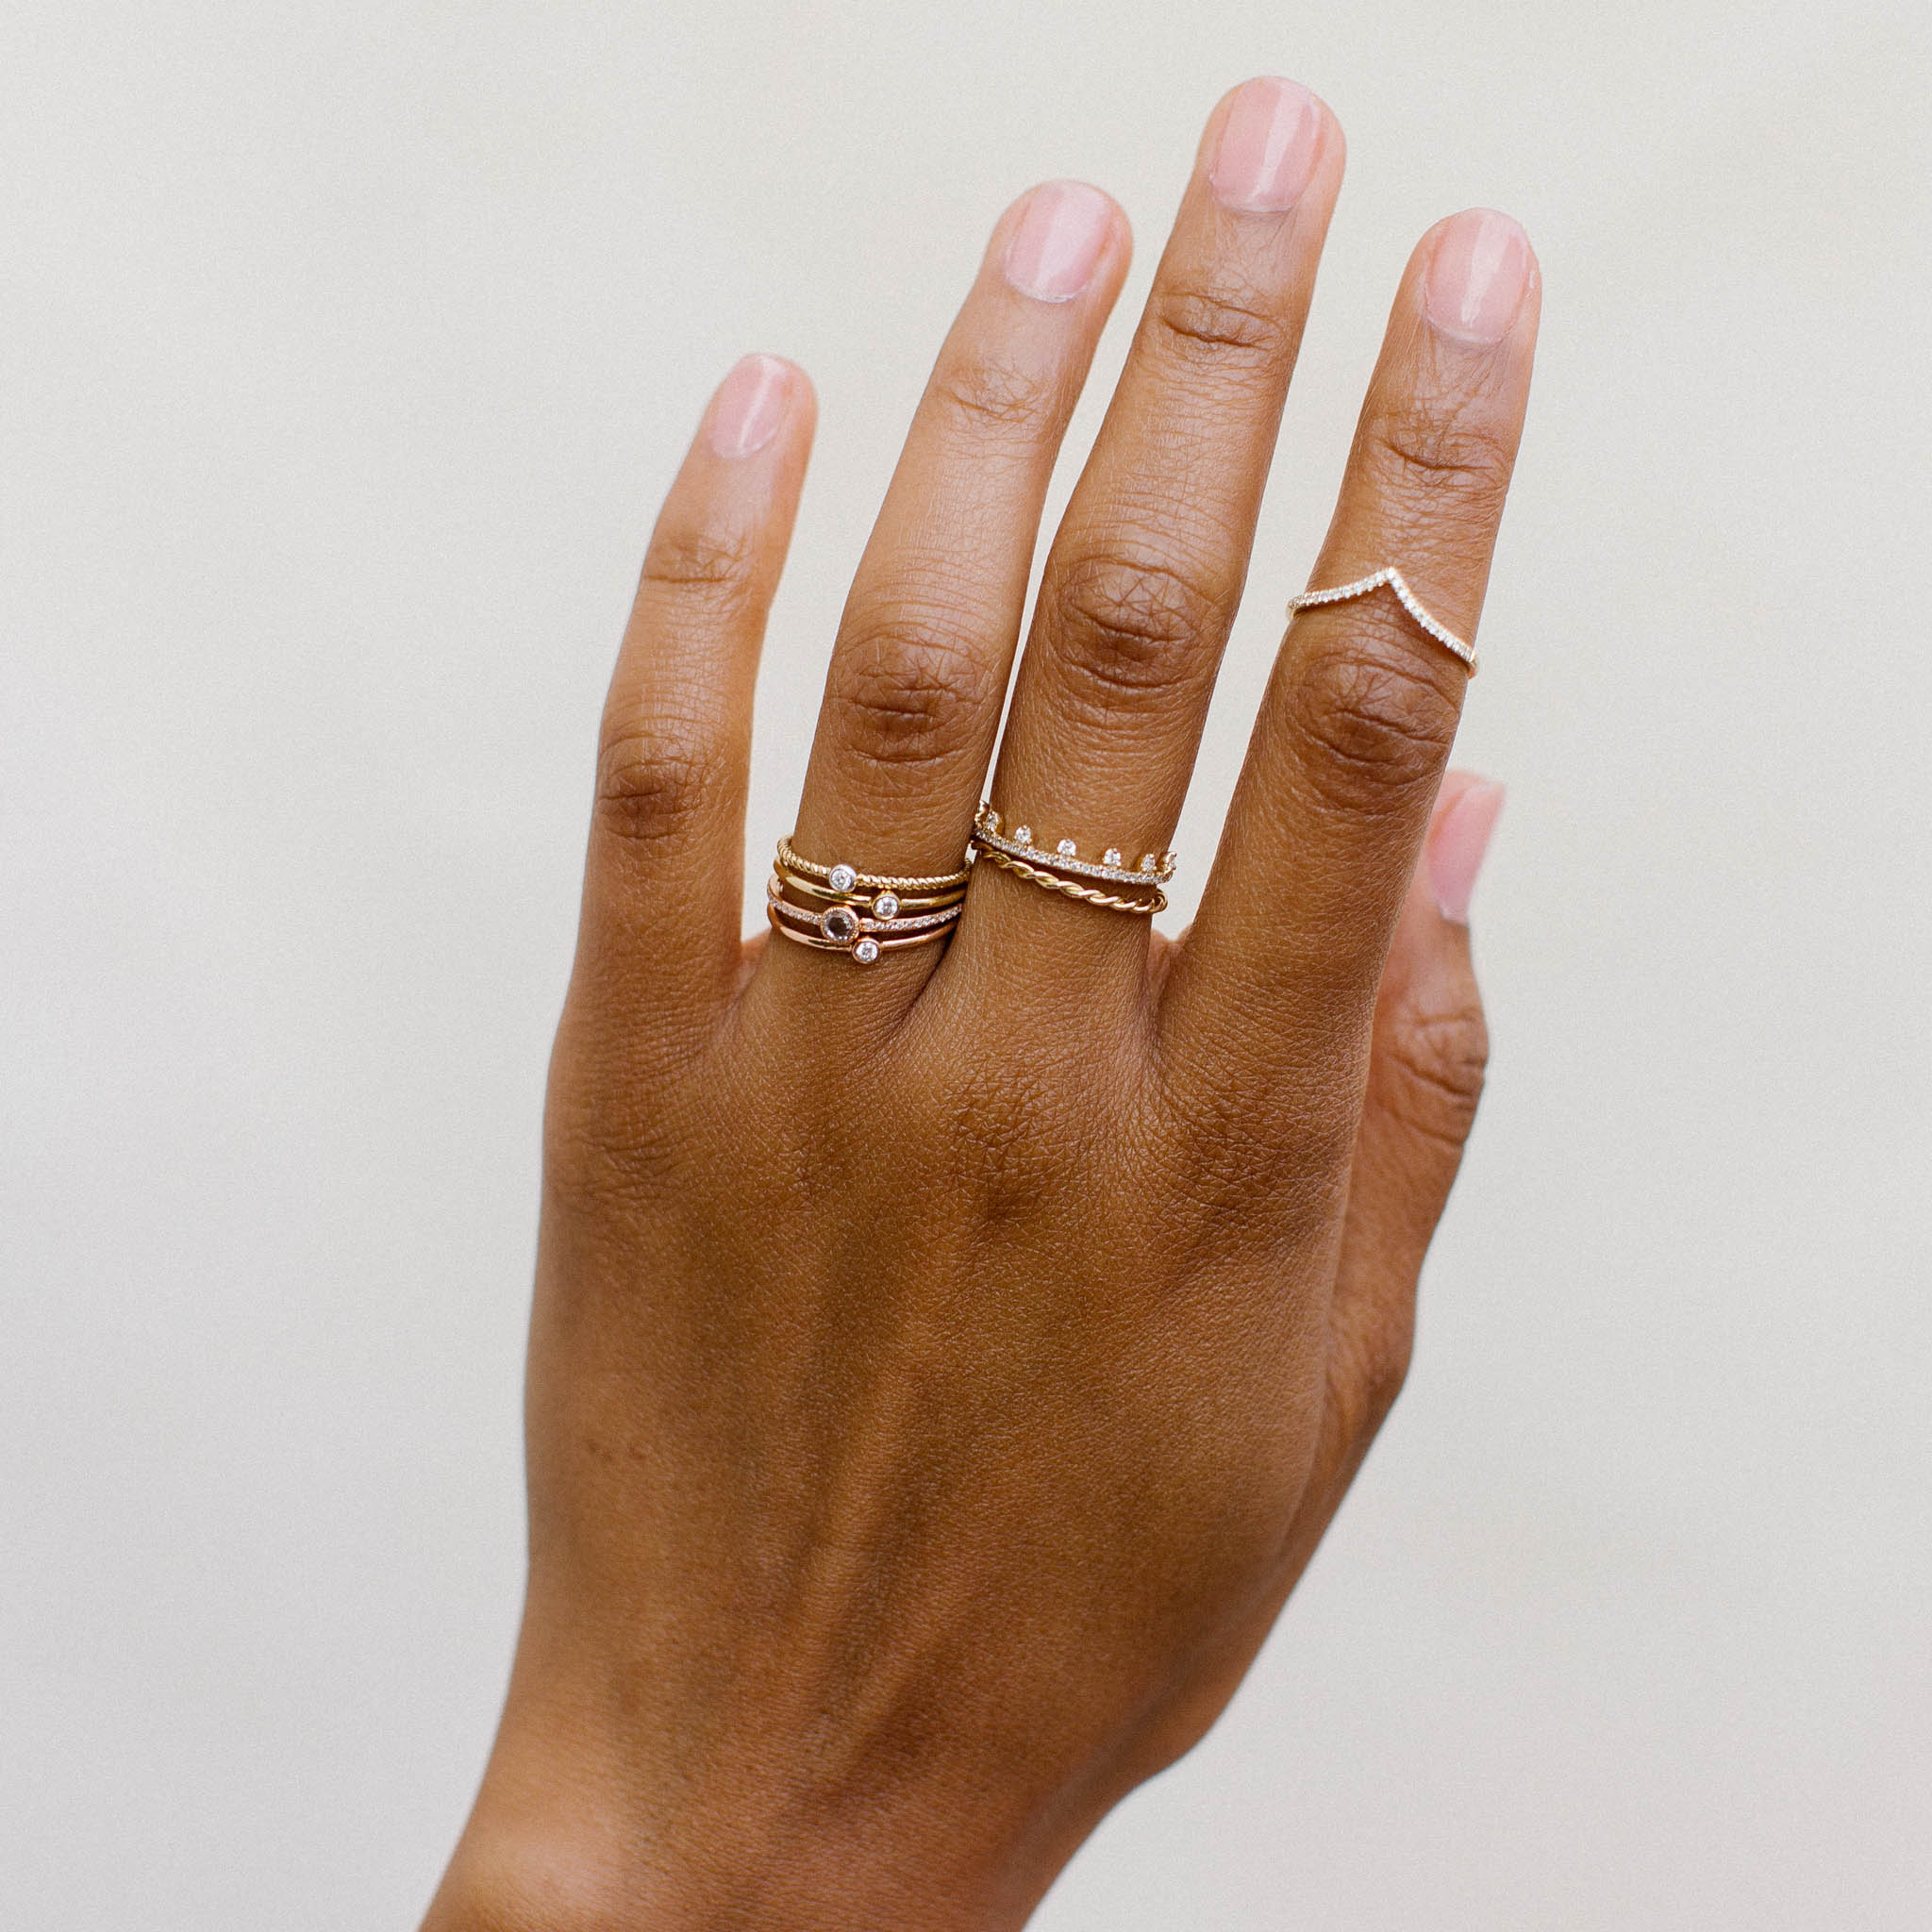 Eva Diamond Crown Ring